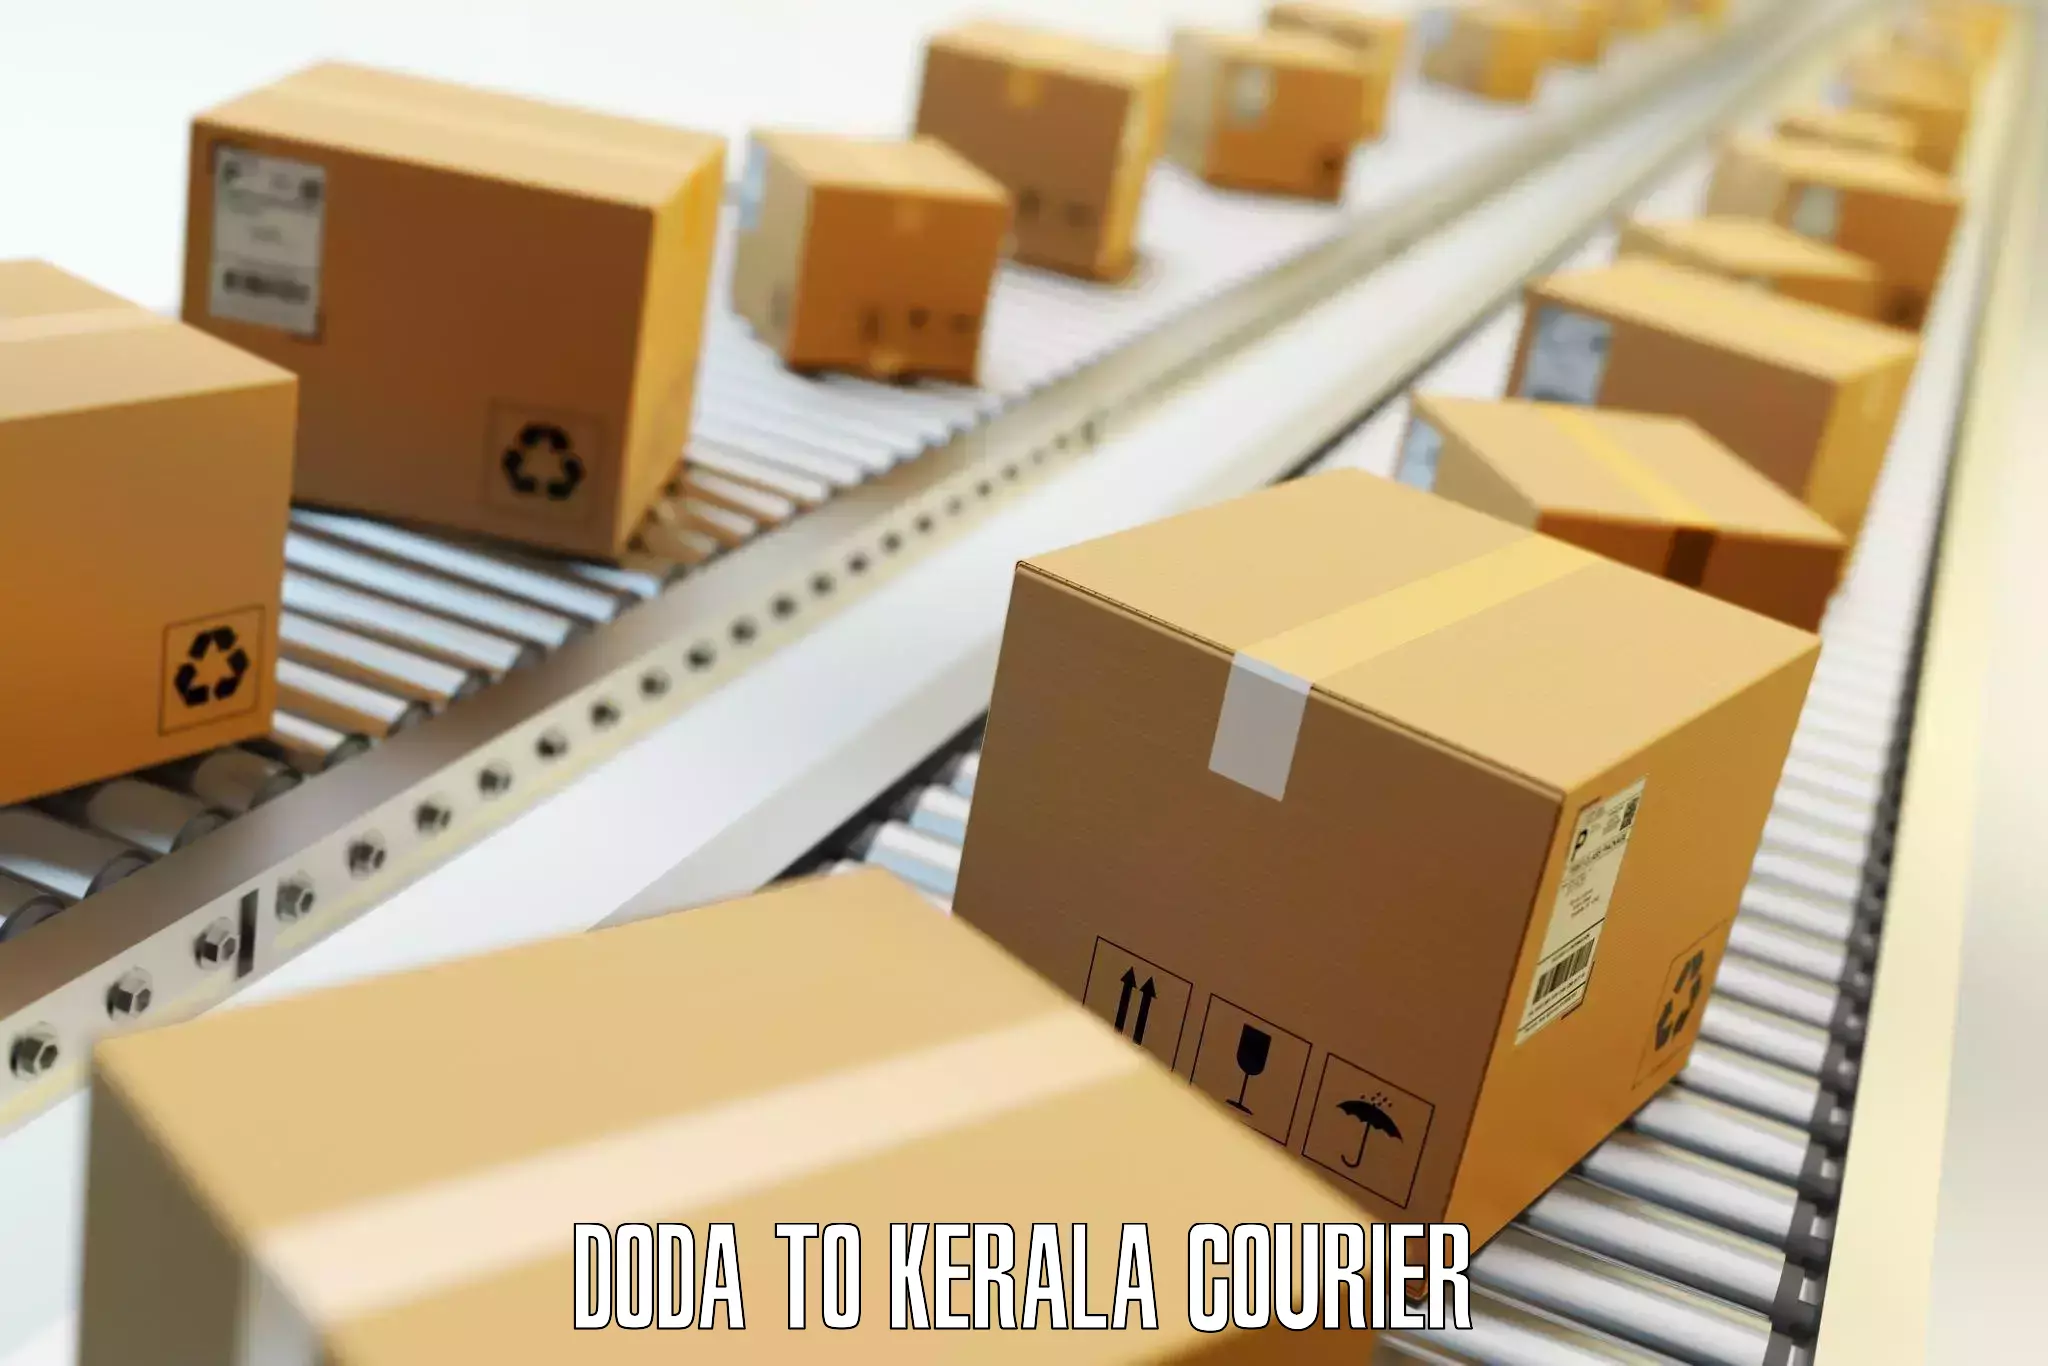 Personal effects shipping in Doda to Kerala